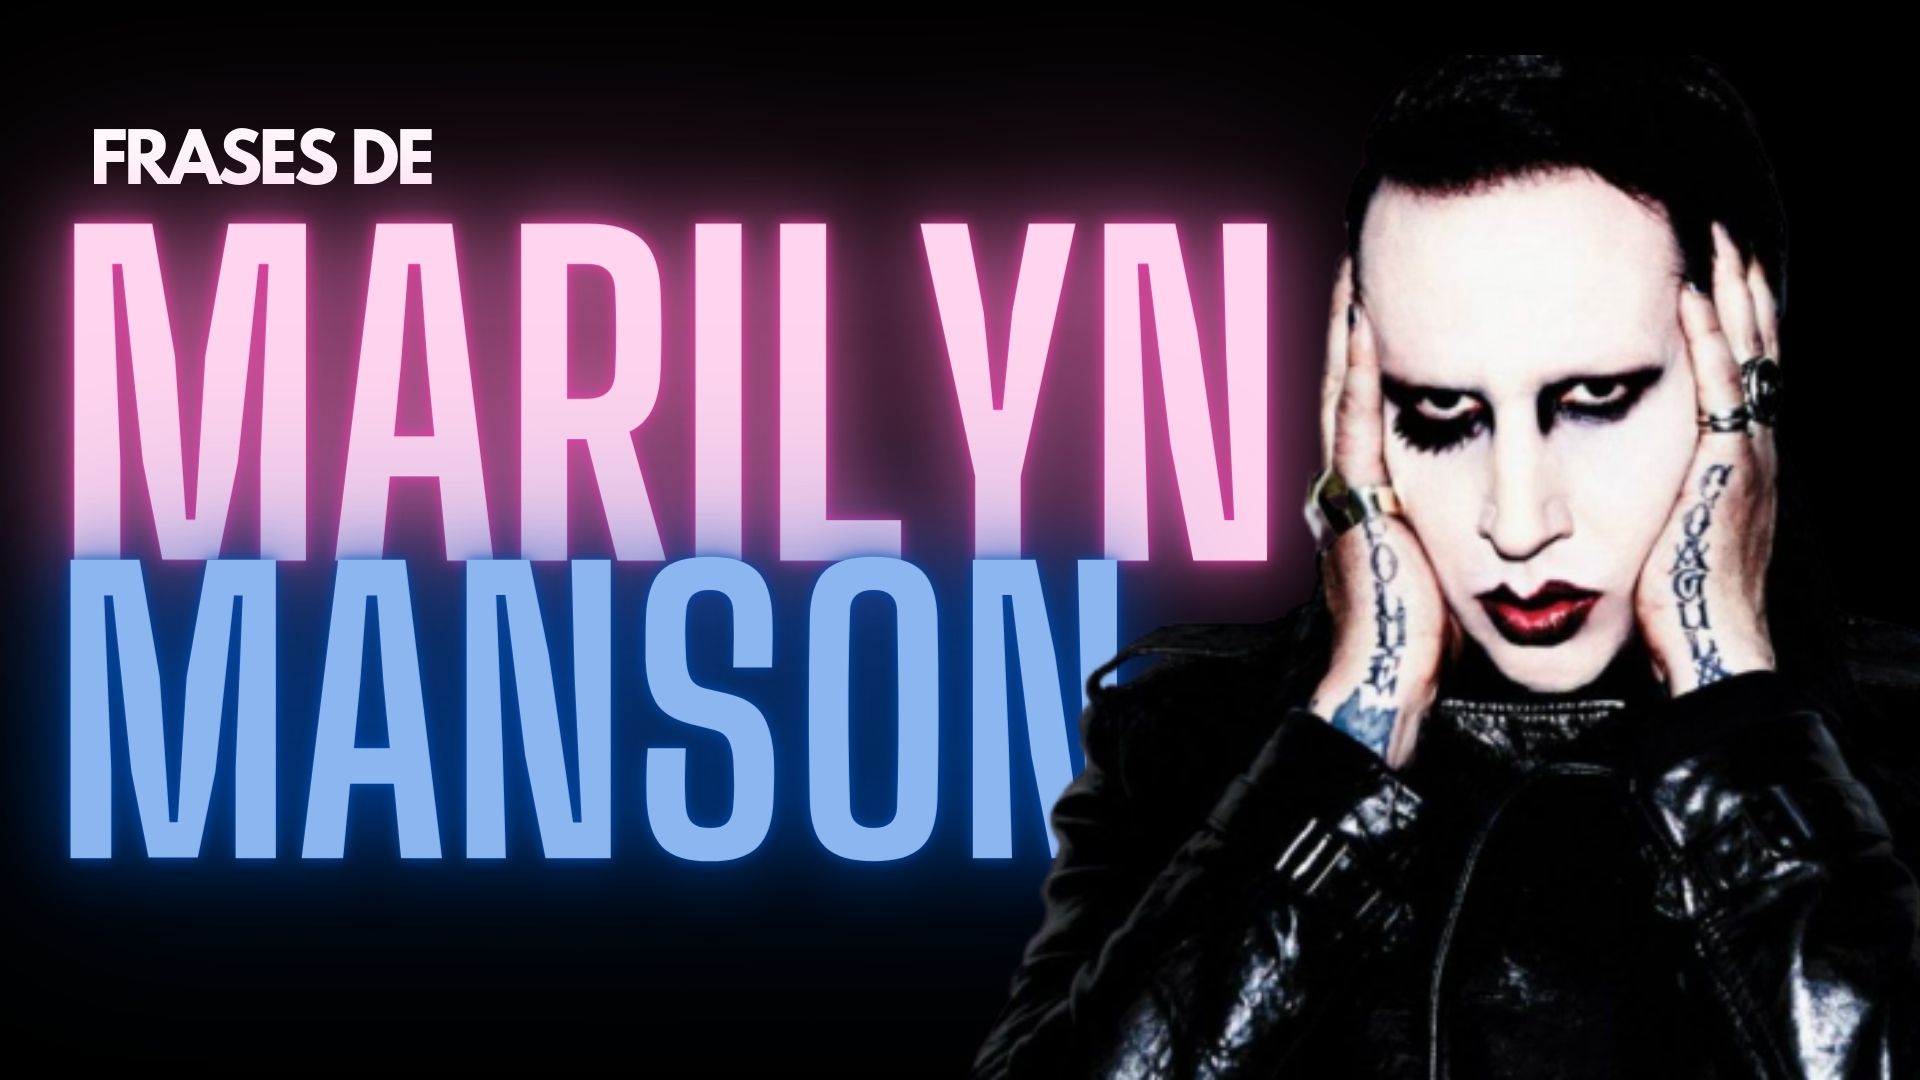 103-frases-de-Marilyn-Manson-sobre-el-amor-la-belleza-y-el-exito